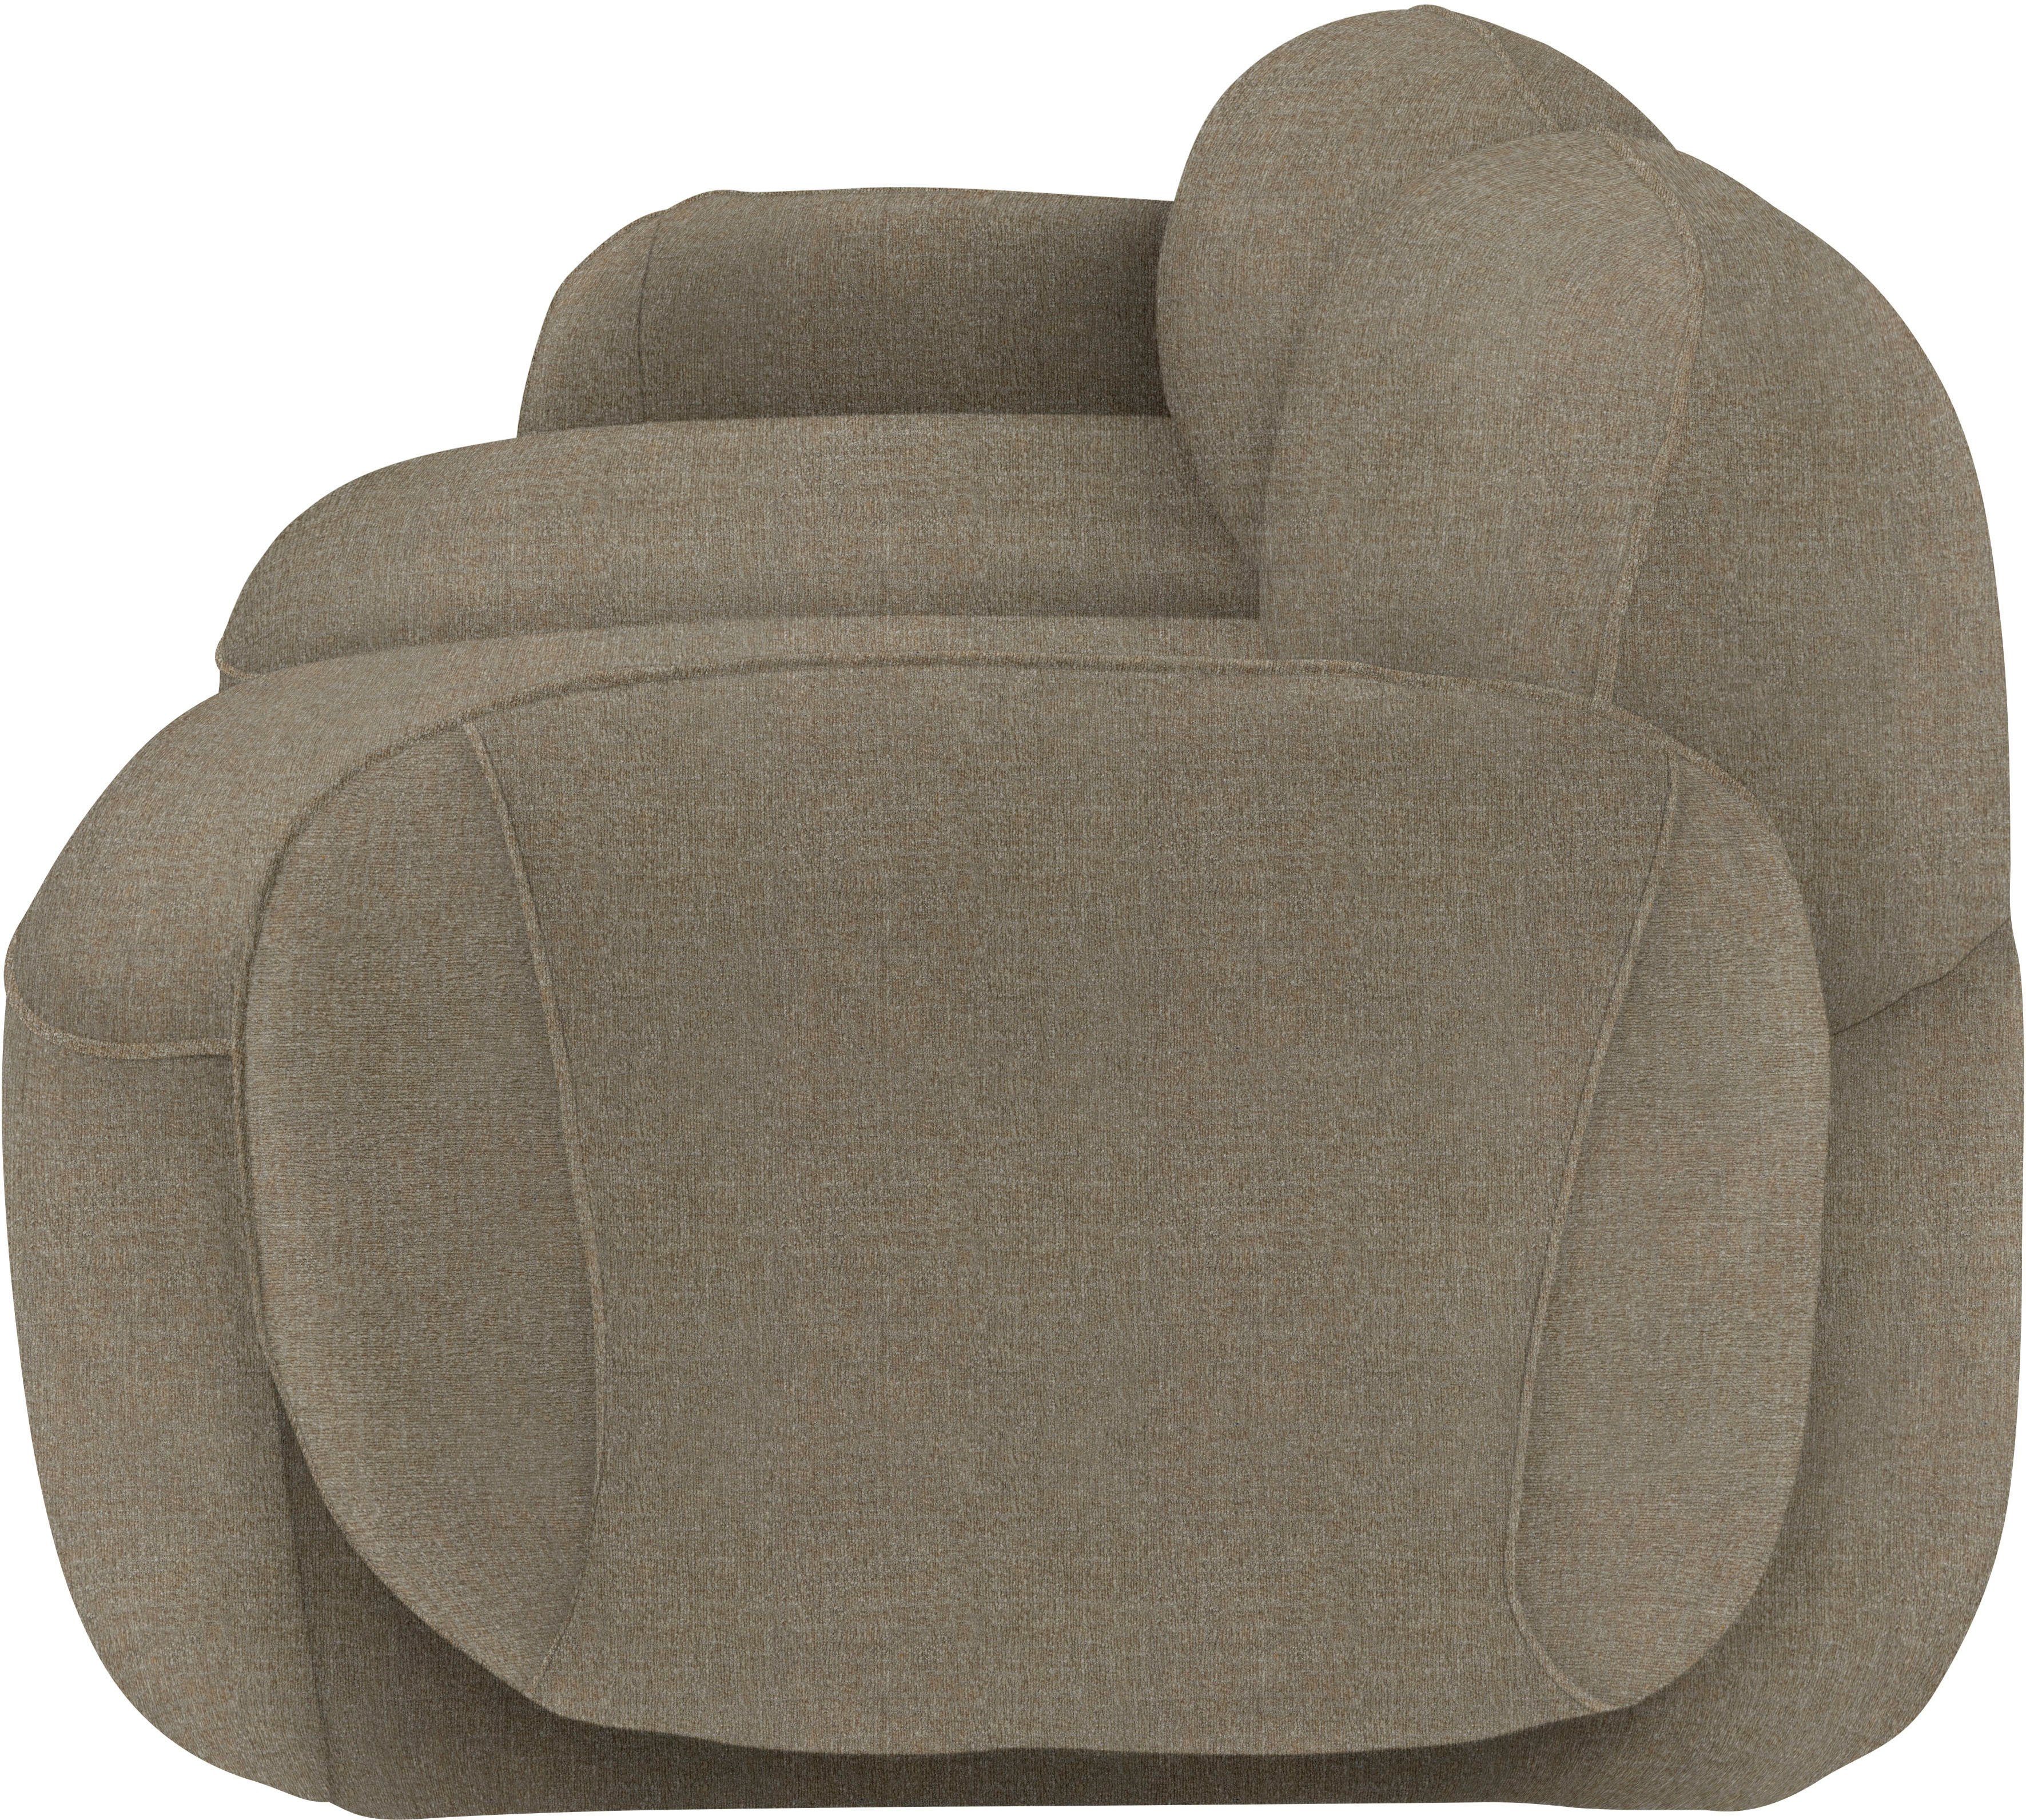 Memoryschaum, Bubble, komfortabel 2,5-Sitzer im furninova skandinavischen Design durch